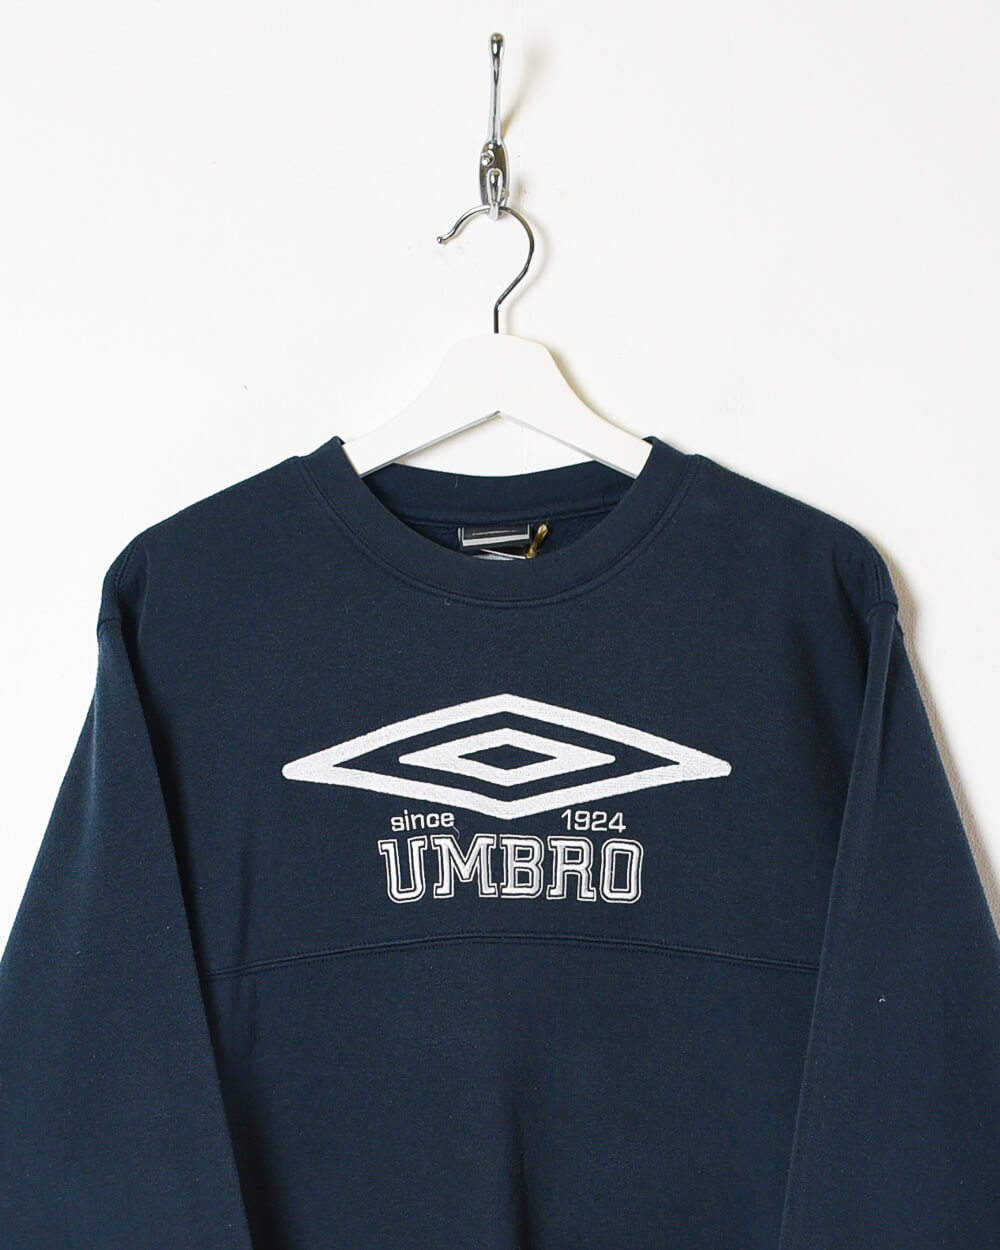 Black Umbro Since 1924 Sweatshirt - Small